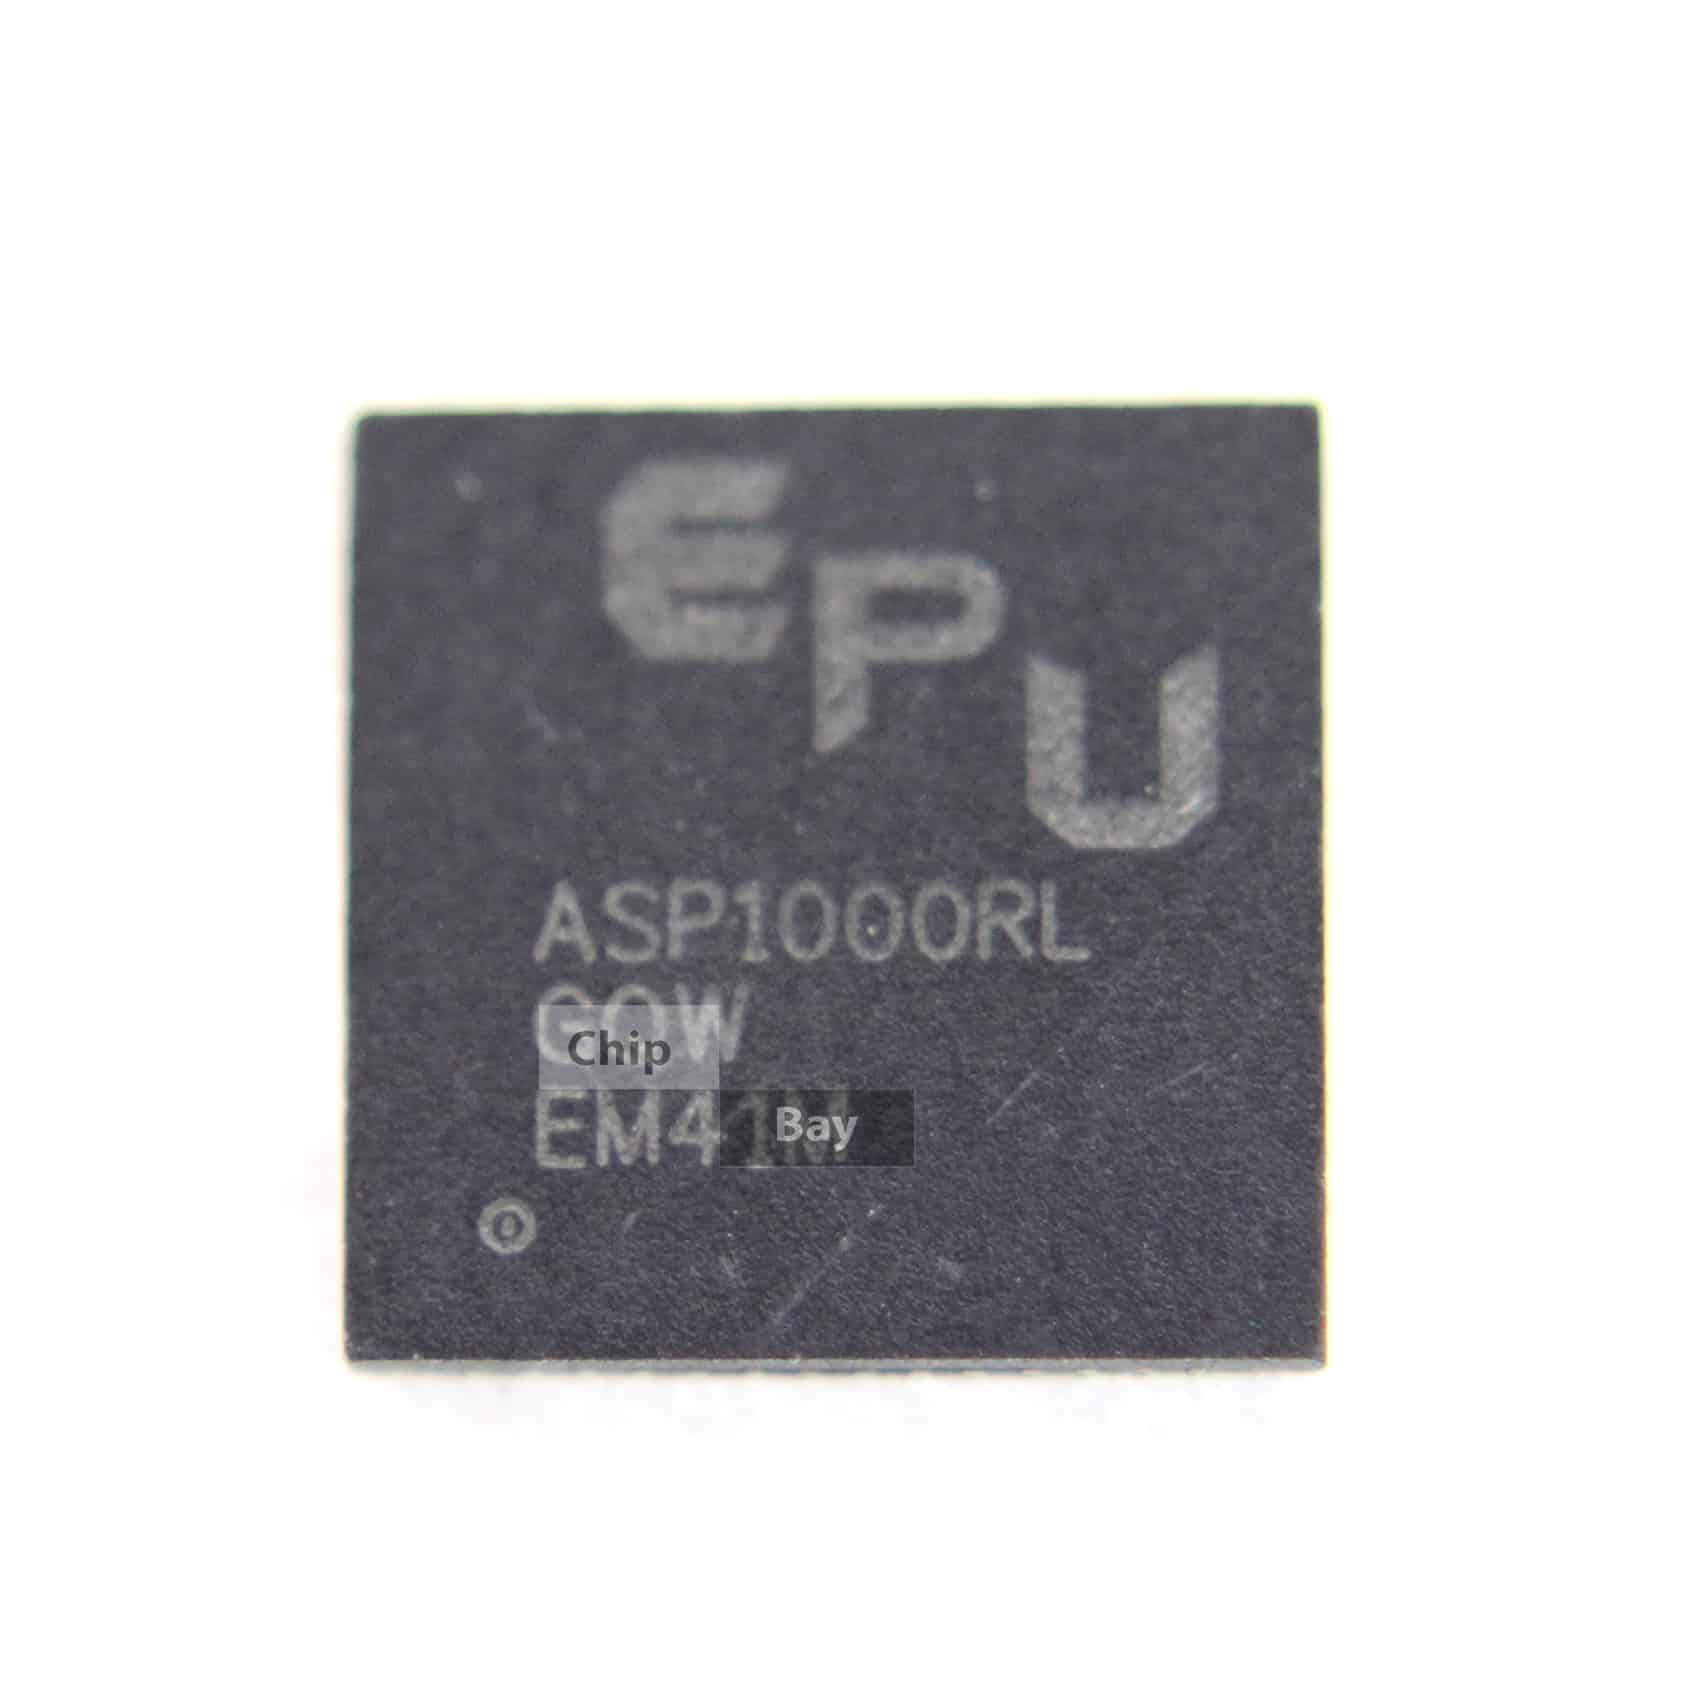 1x A5P1405I ASPI405I ASP14O5I ASP140SI ASP14051 ASP 1405I ASP1405I QFN56 IC Chip